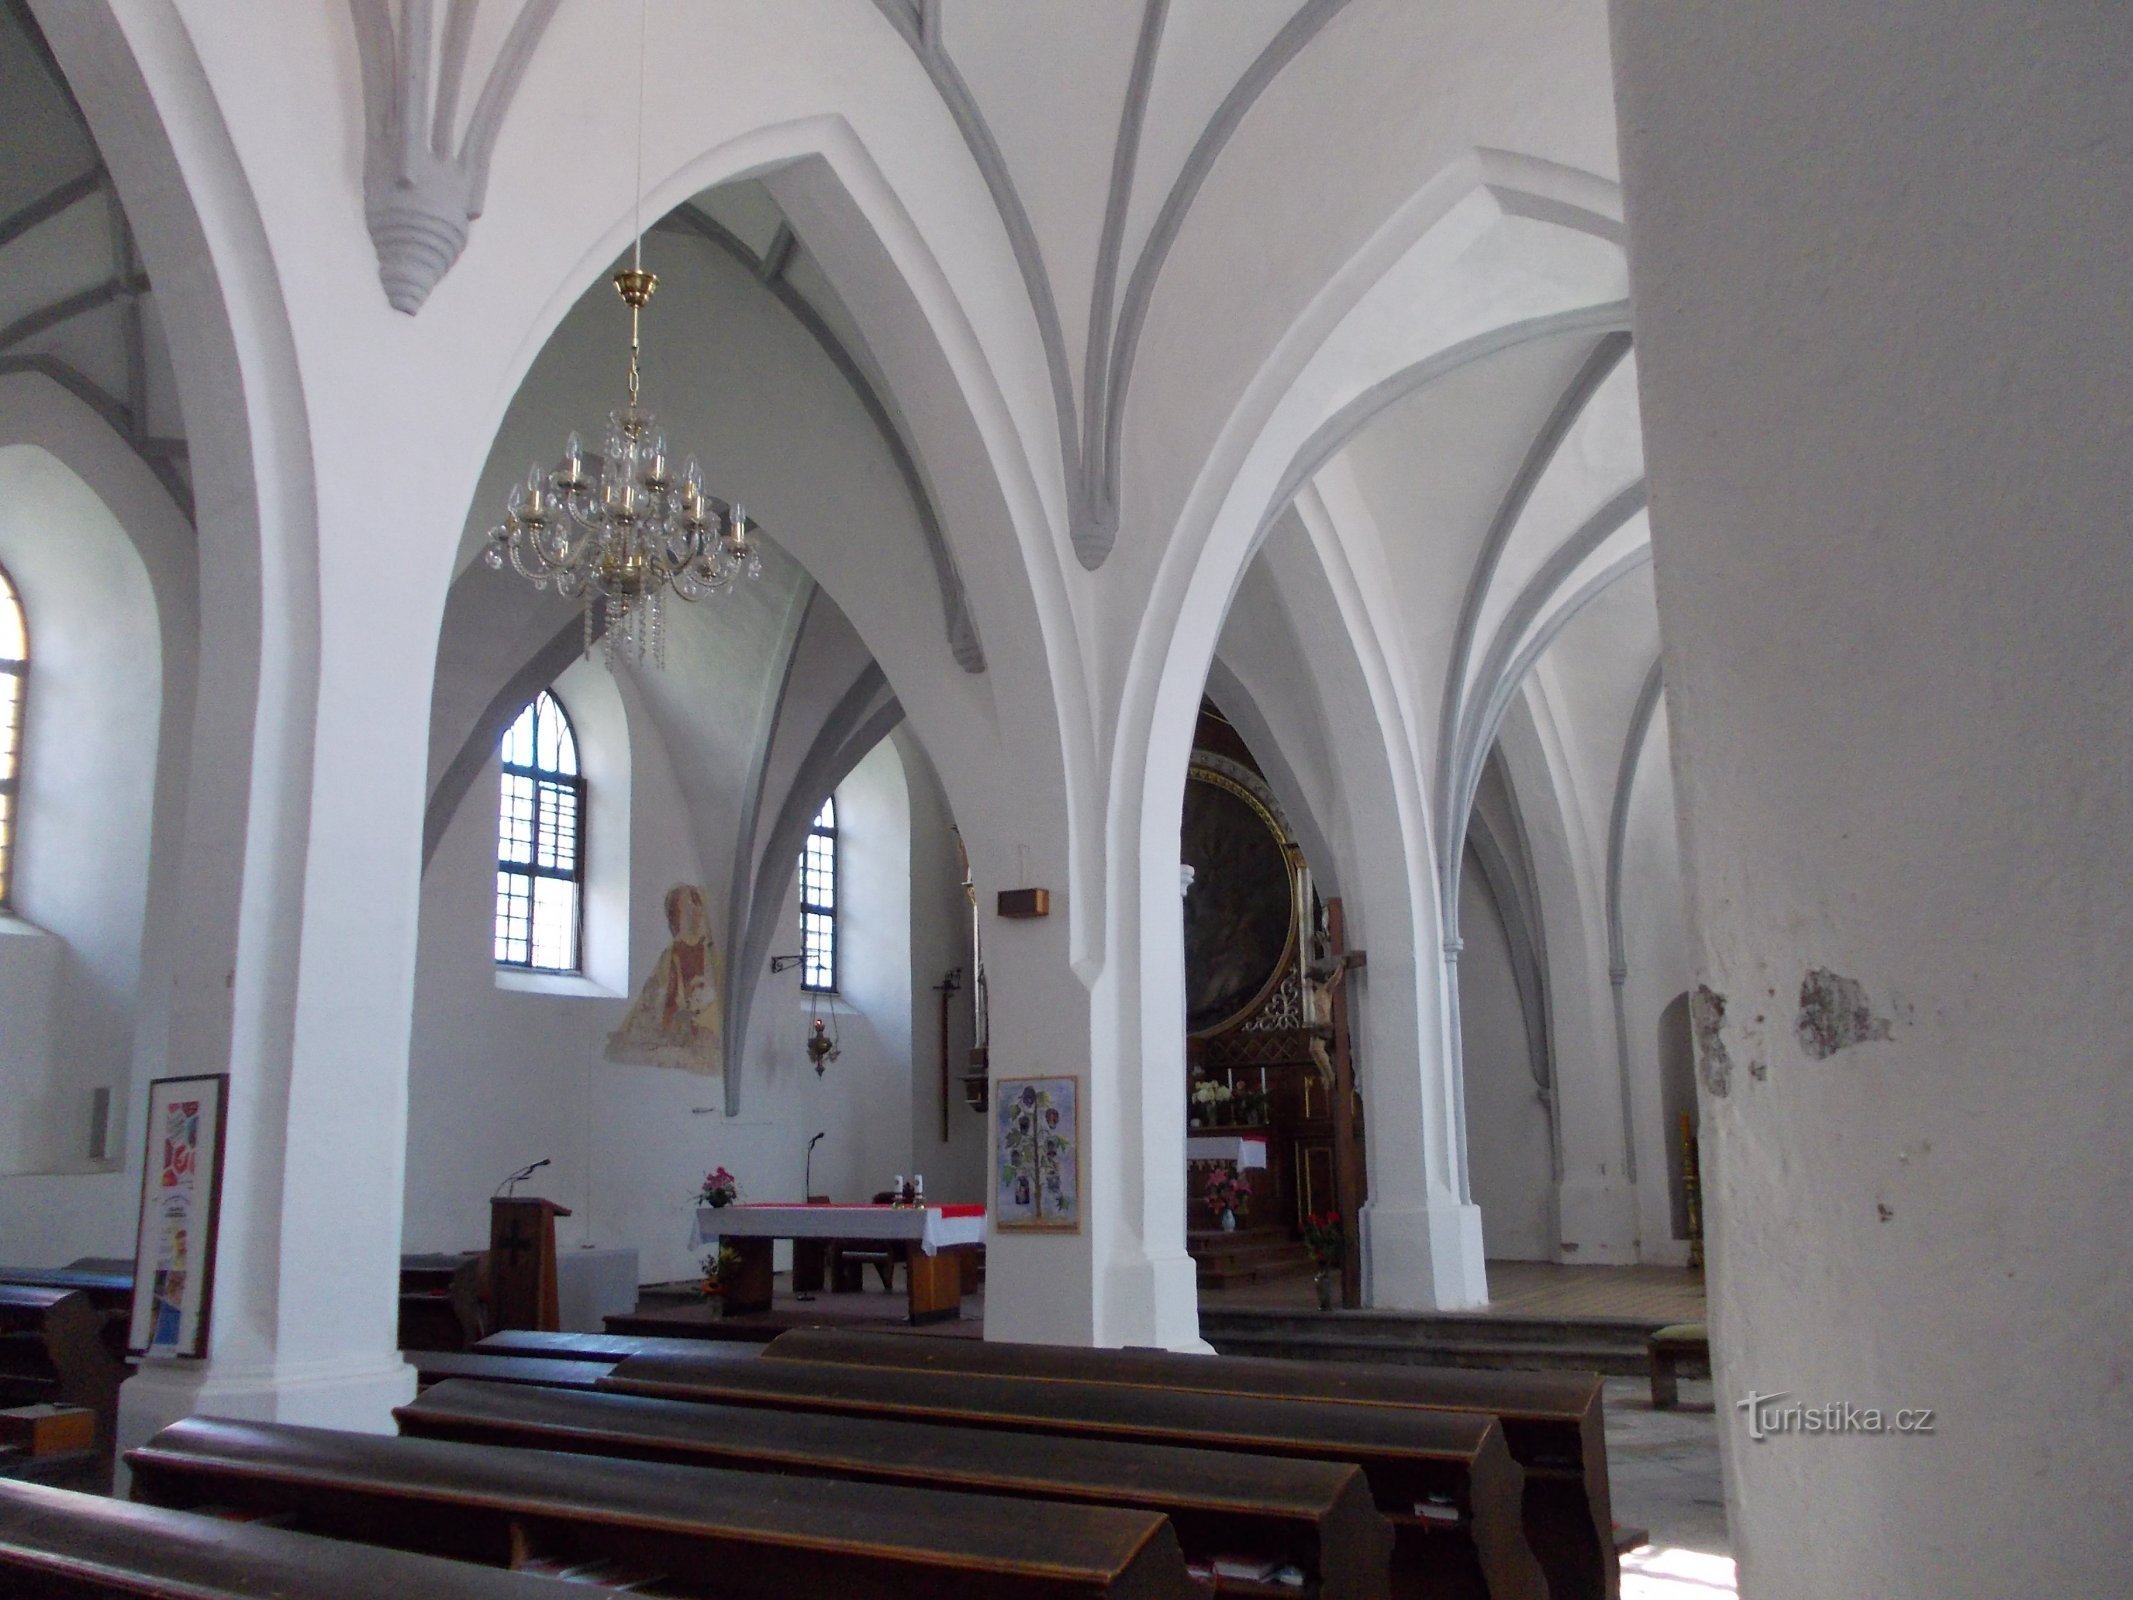 教会の身廊の柱